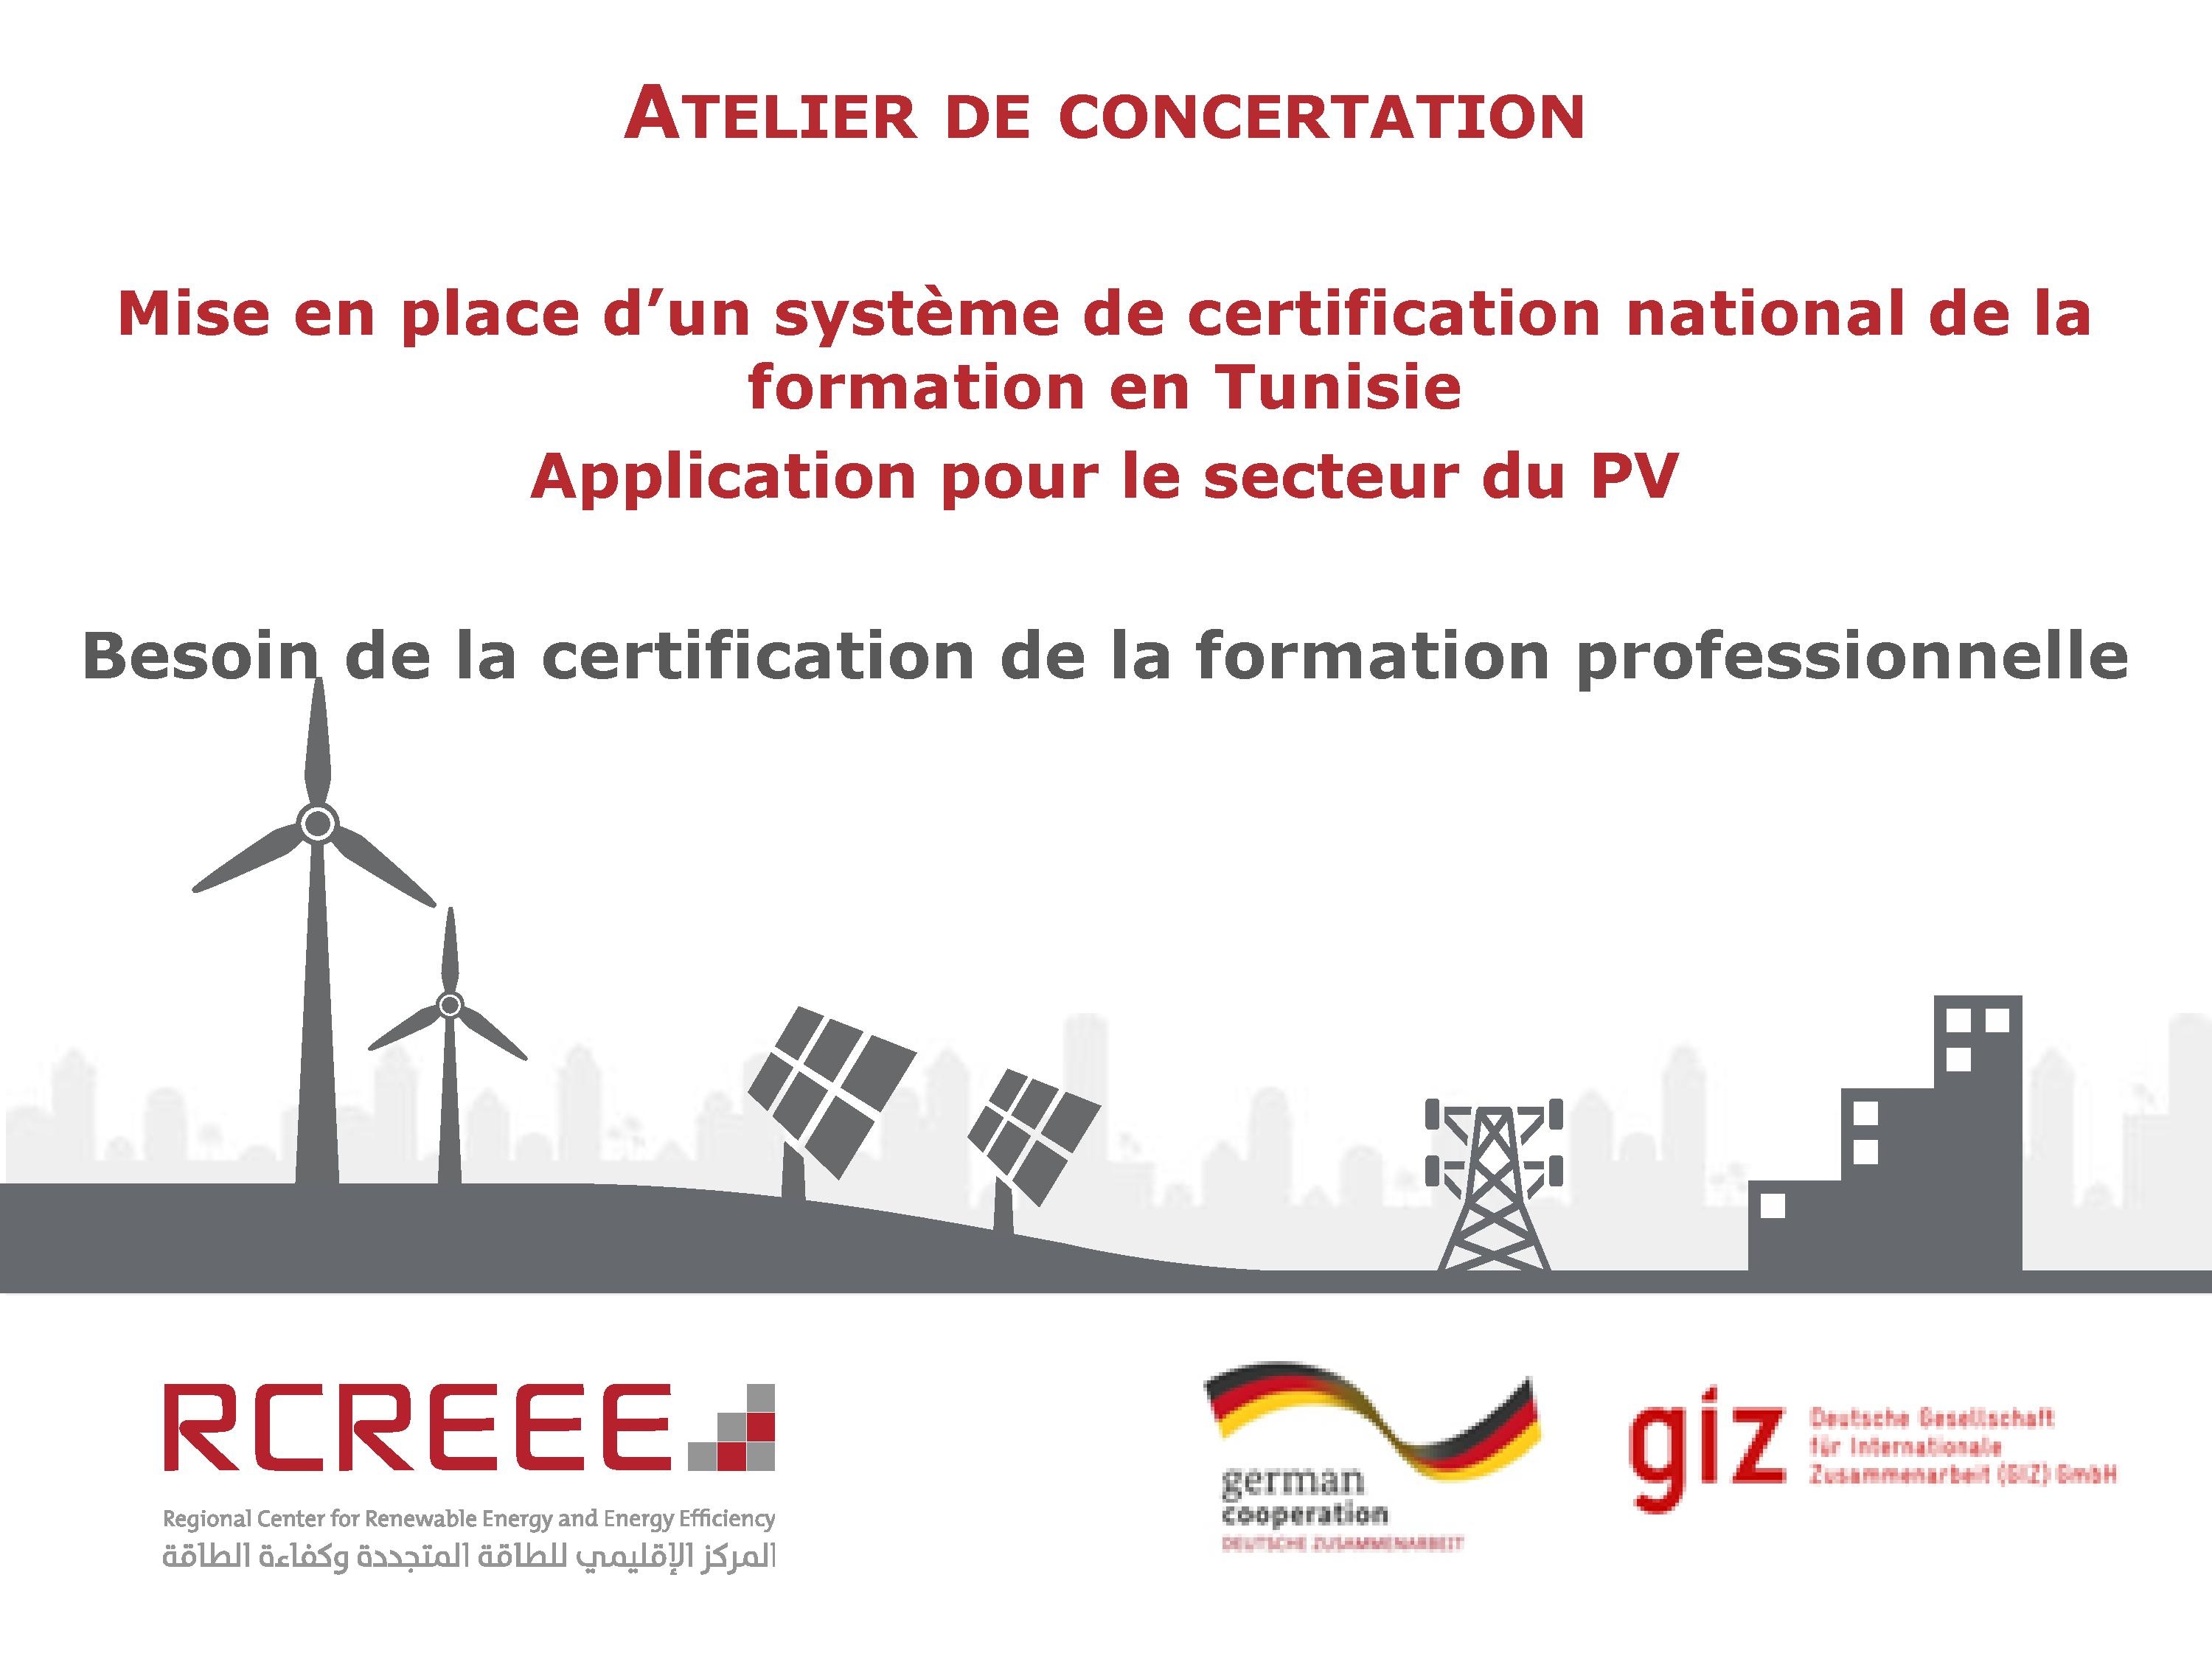 Besoin de la certification de la formation professionnelle dans le secteur photovoltaïque